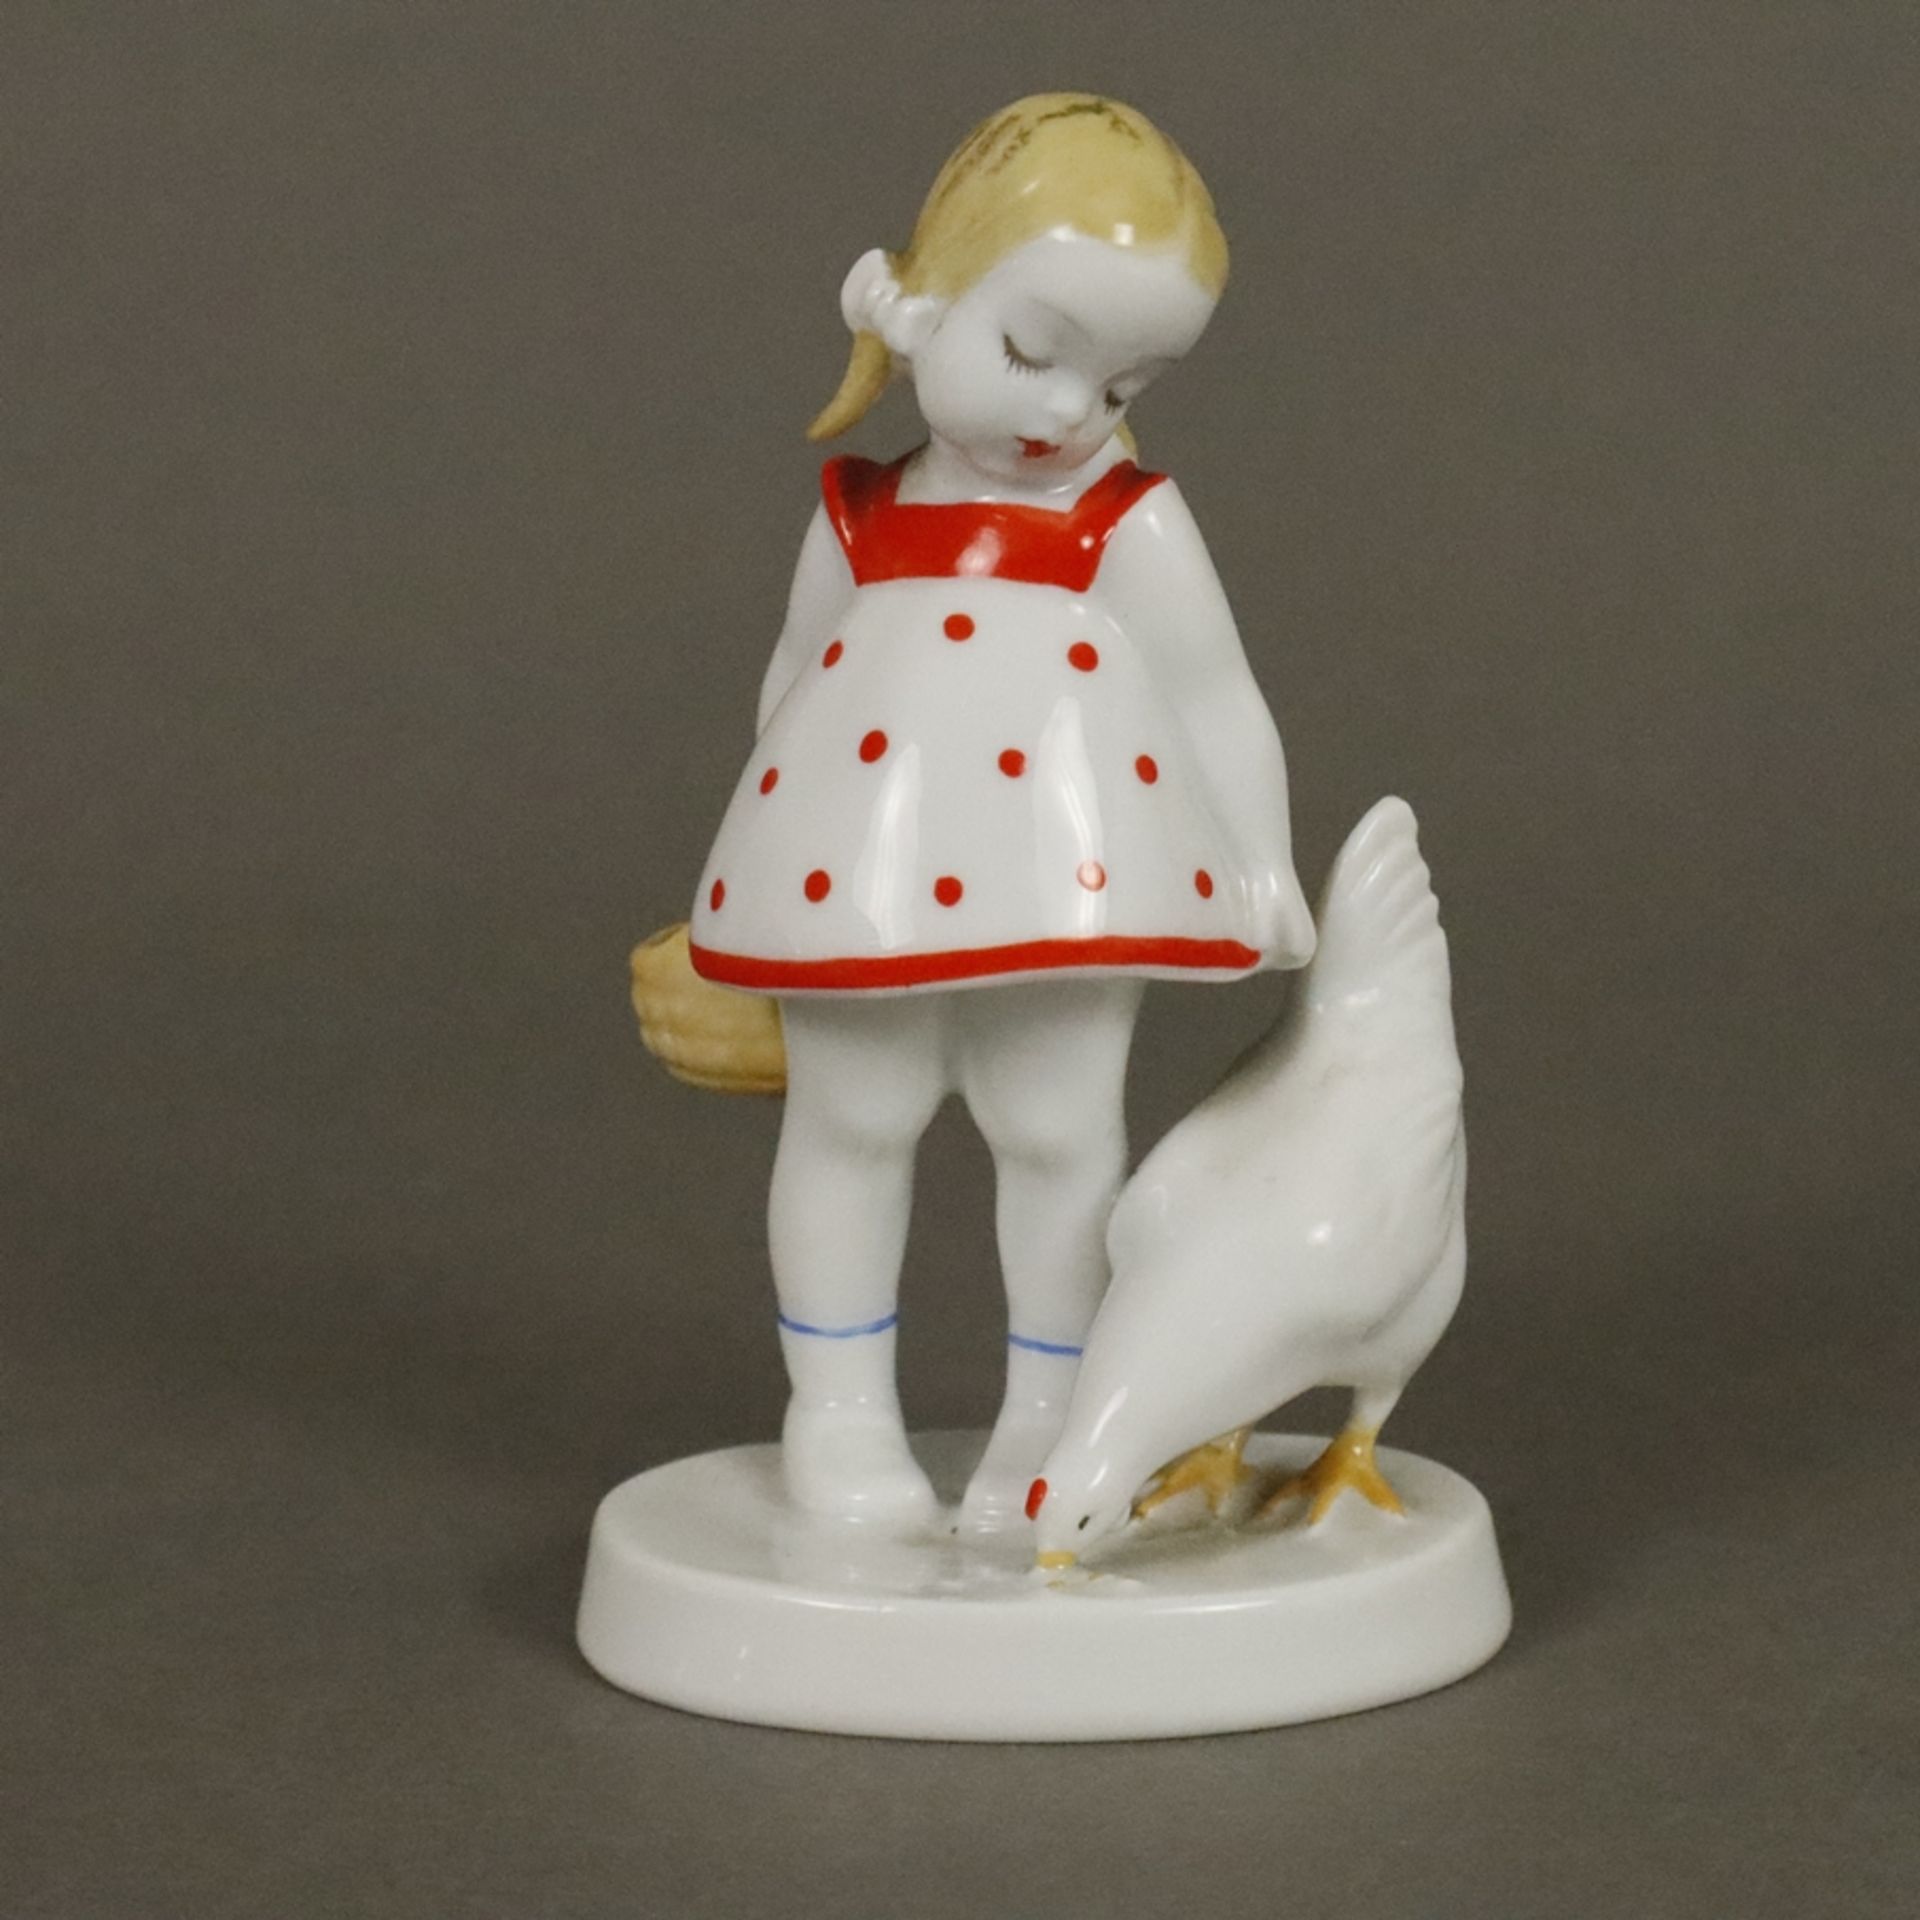 Seltene Porzellanfigur "Mädchen mit Huhn" - Rosenthal, Kunstabteilung Selb, 1930er Jahre, Porzellan